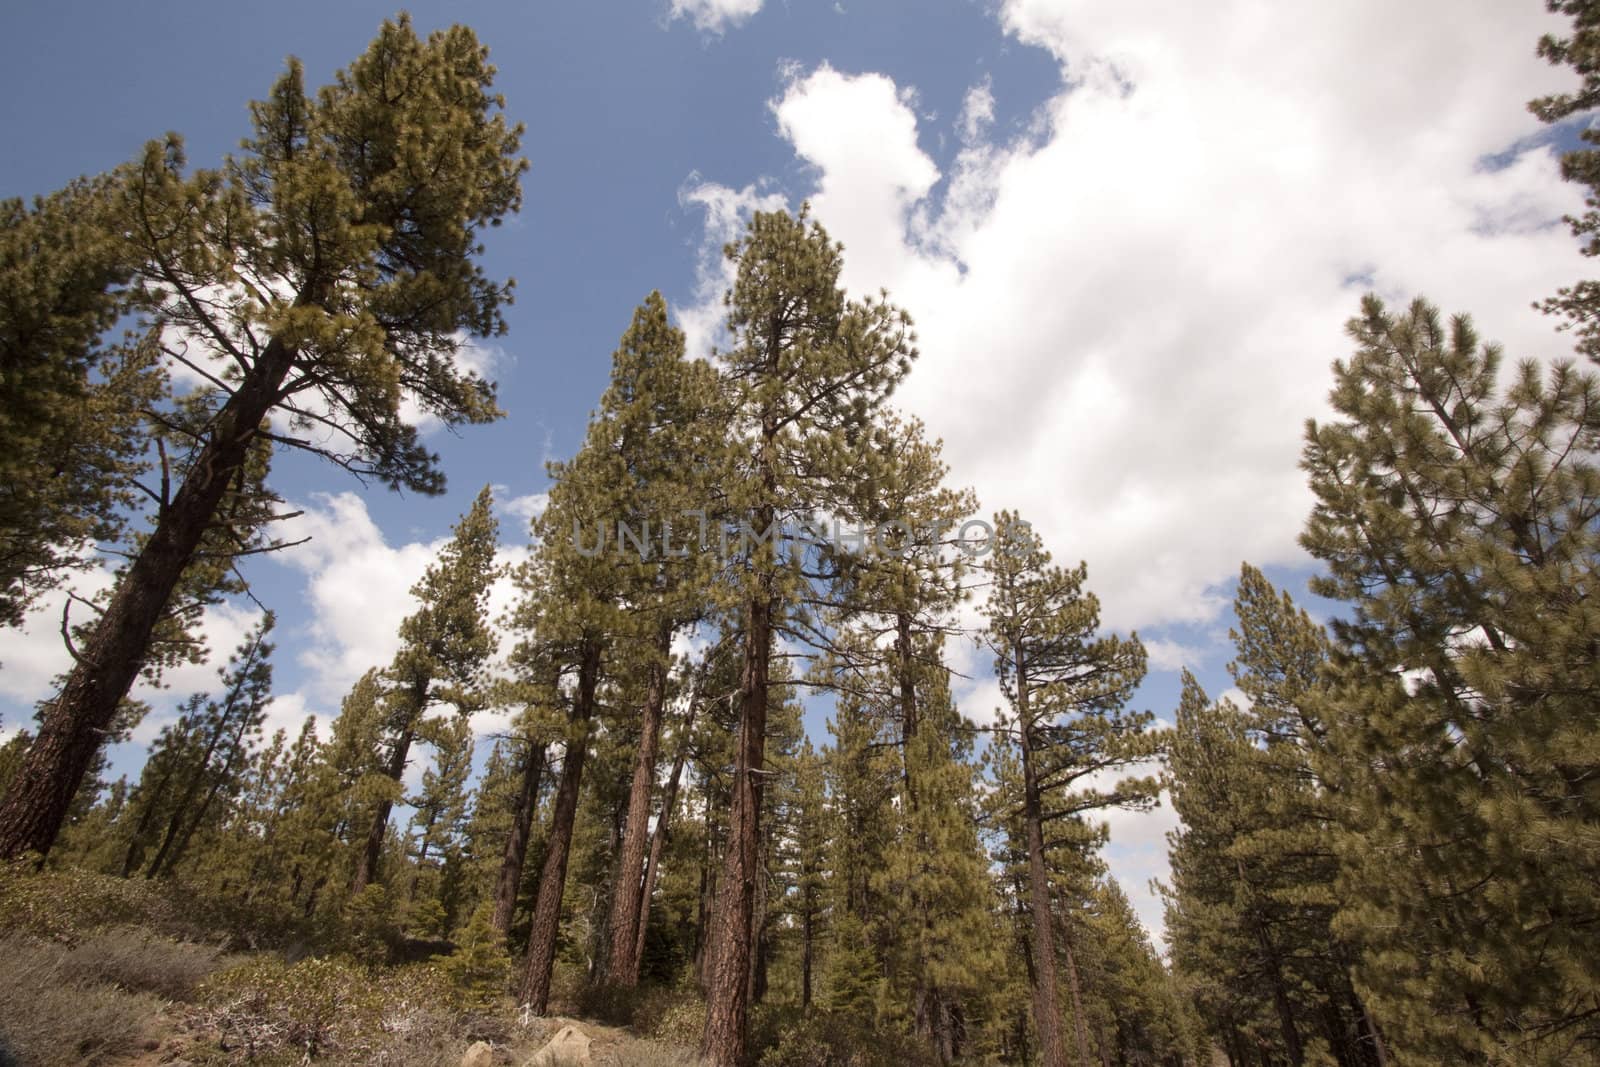 Pine tree forest in the Sierra Nevadas - Verdi Nevada